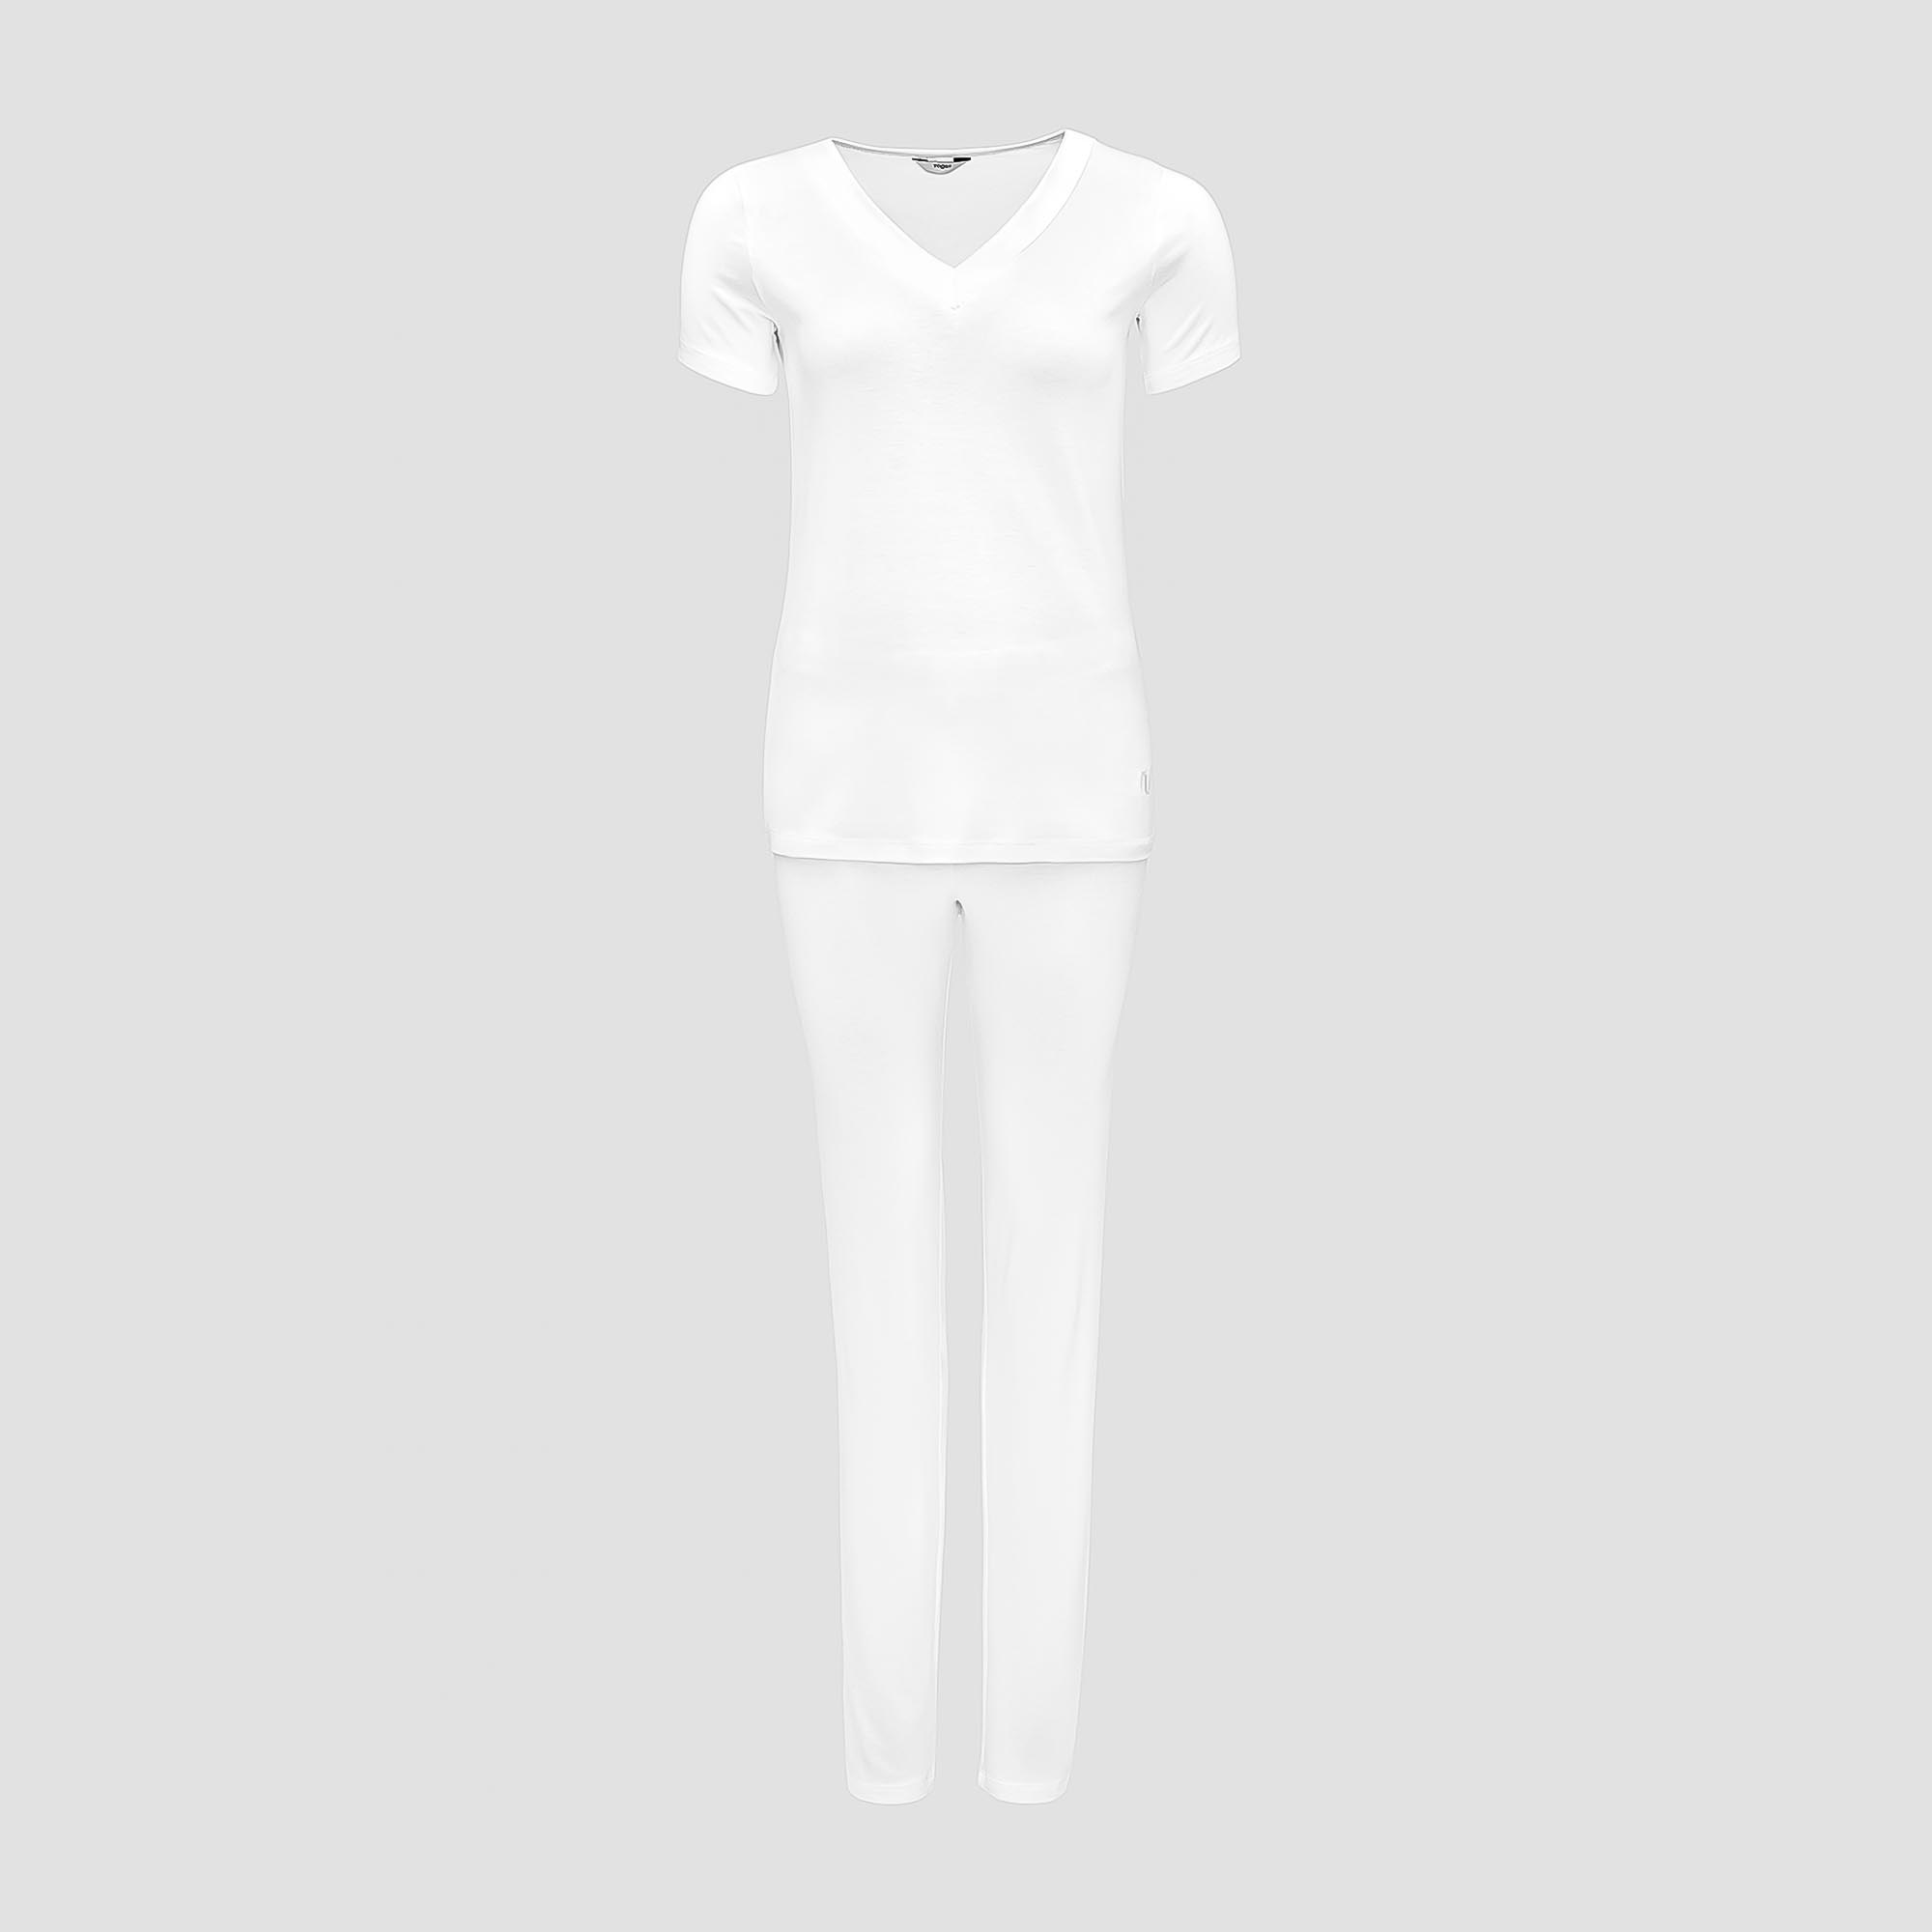 Пижама Togas Ингелла белая женская L(48) 2 предмета пижама брюки